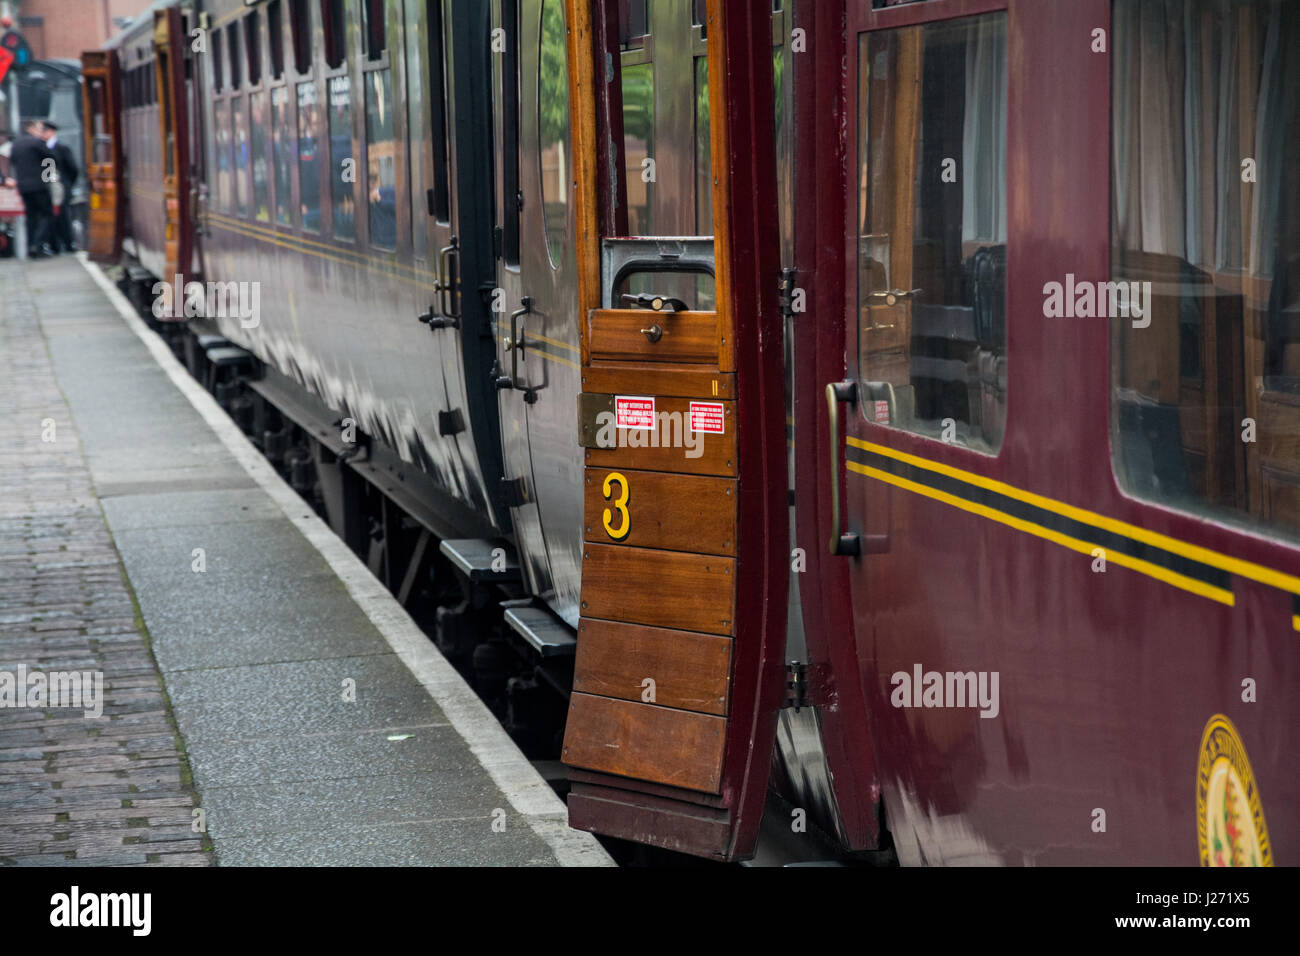 Voitures sur le Royal Scot train à vapeur, la gare de Bridgnorth, Shropshire, West Midlands, Royaume-Uni. Banque D'Images